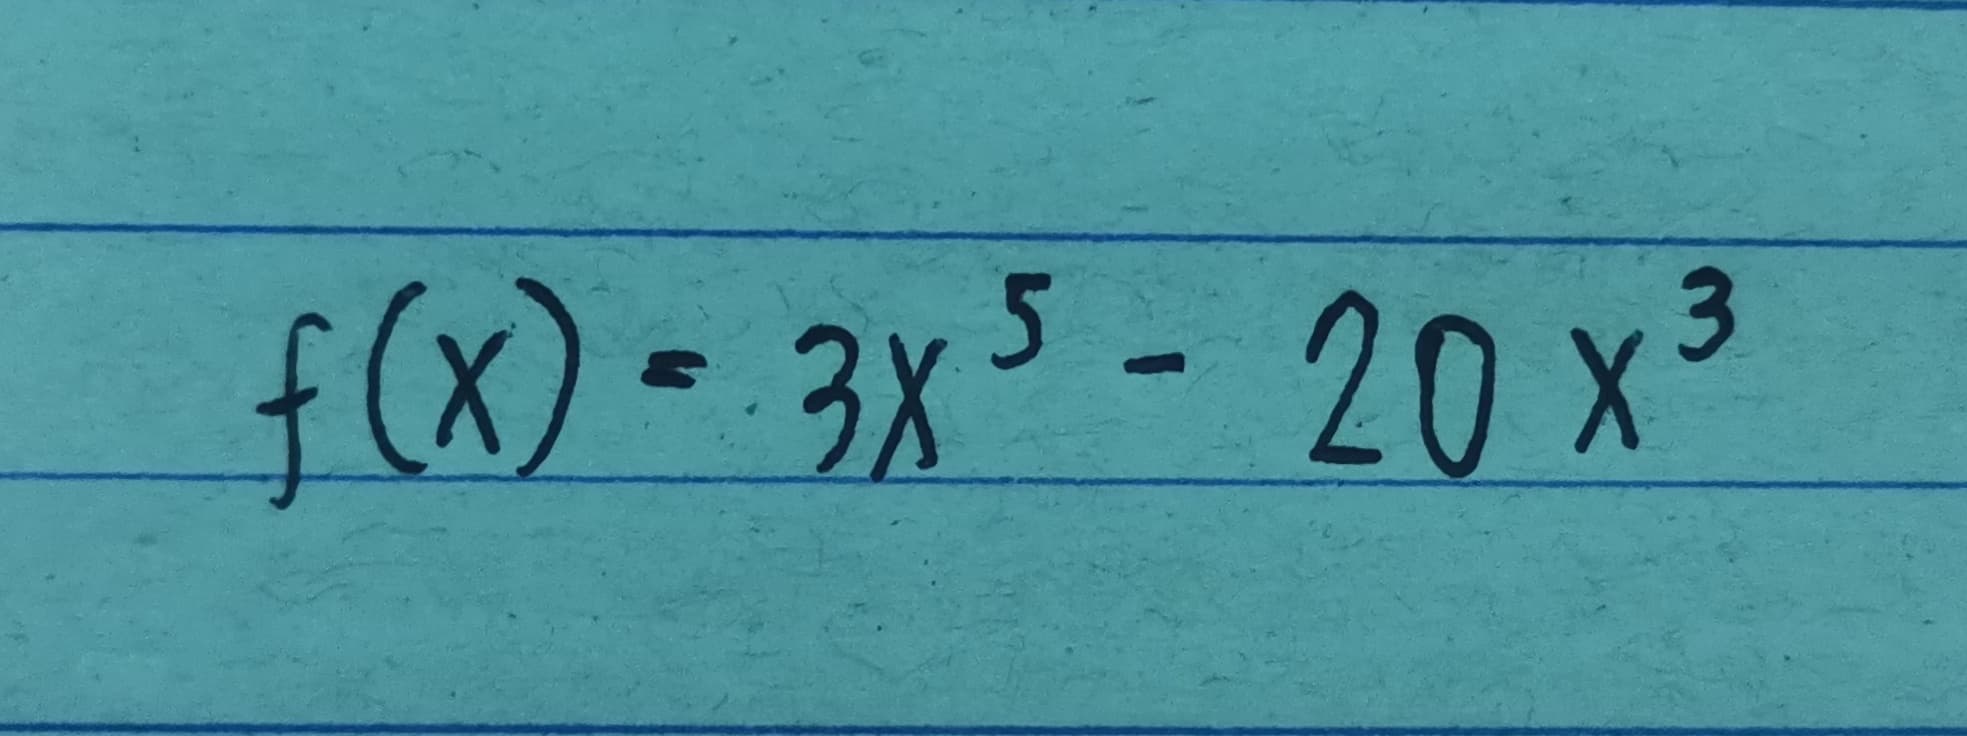 f(x) - 3x5 - 20 x3
